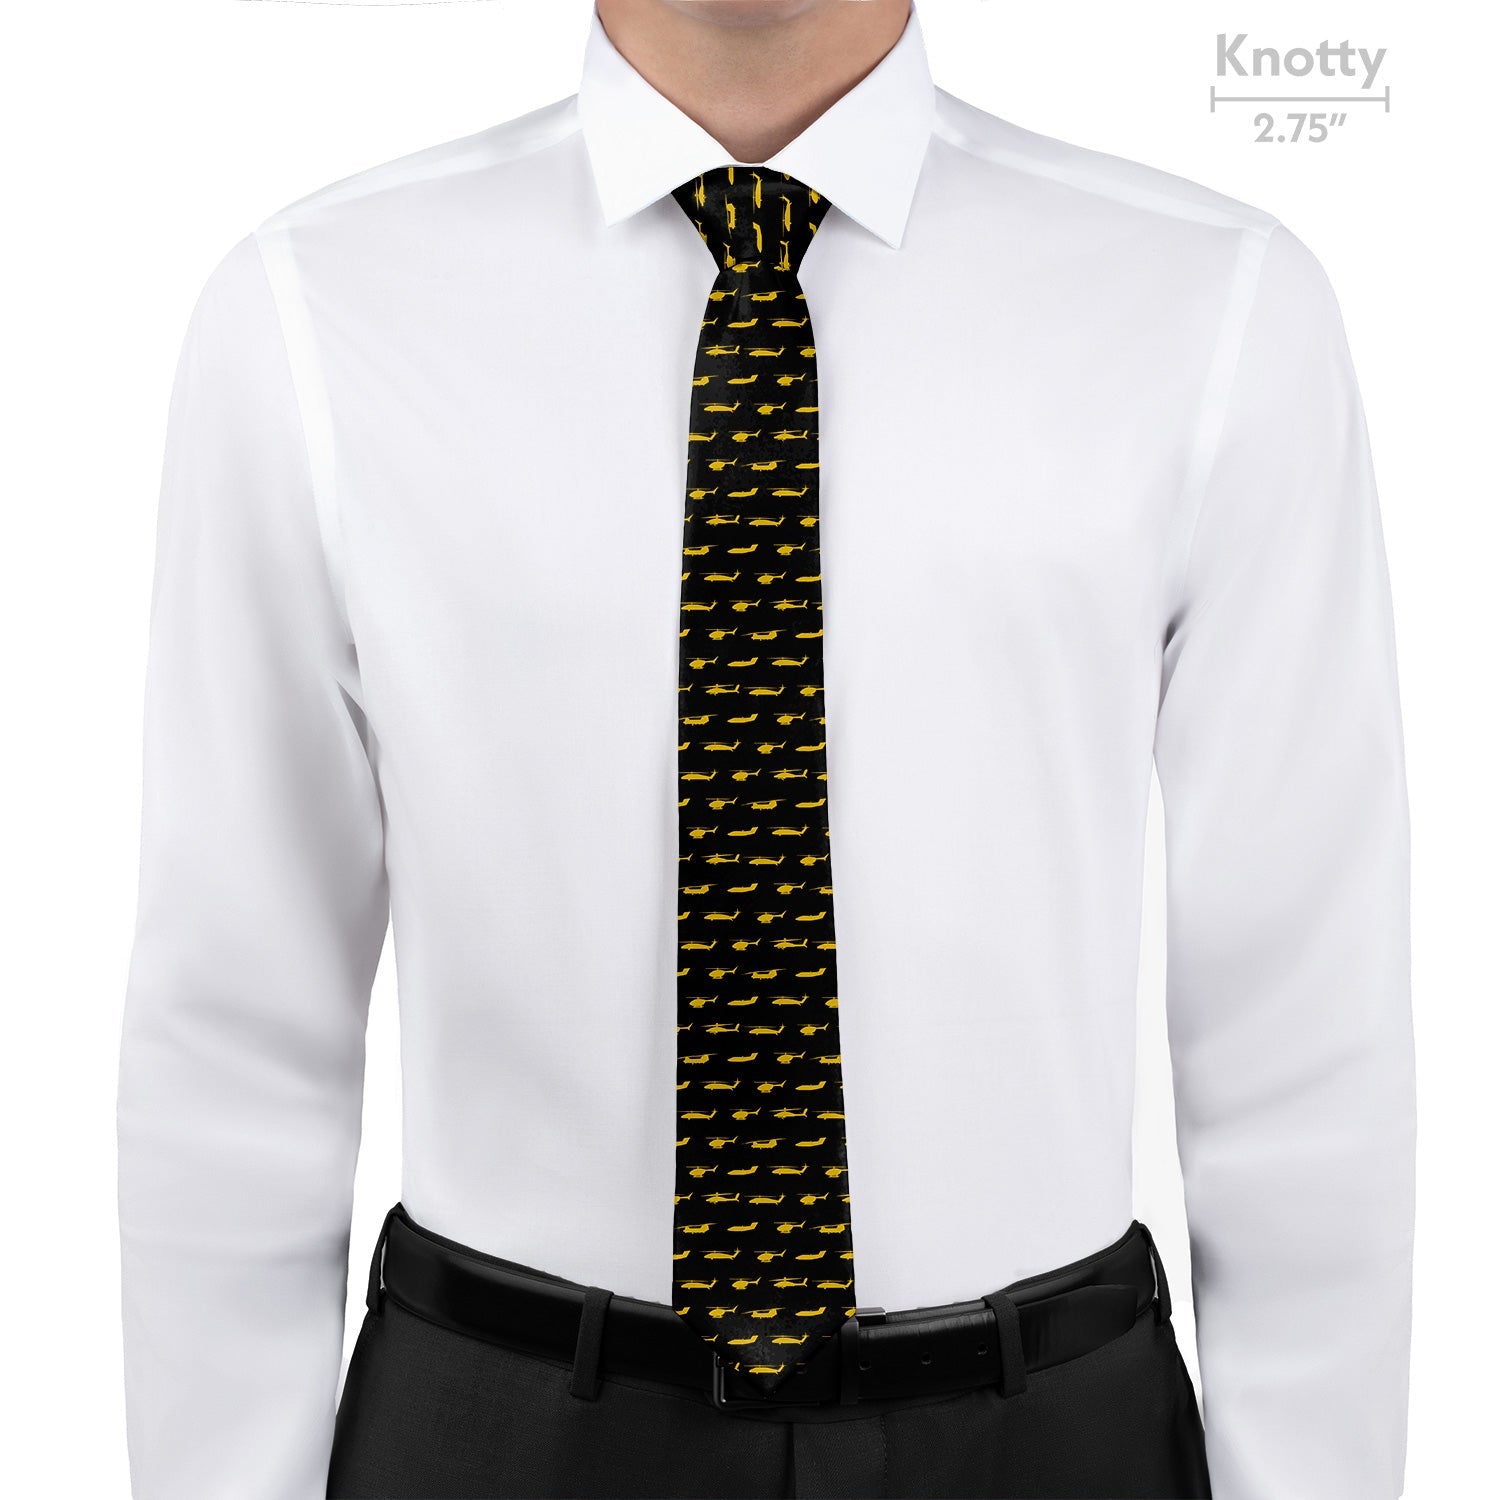 Army Aviation Necktie - Knotty - Knotty Tie Co.